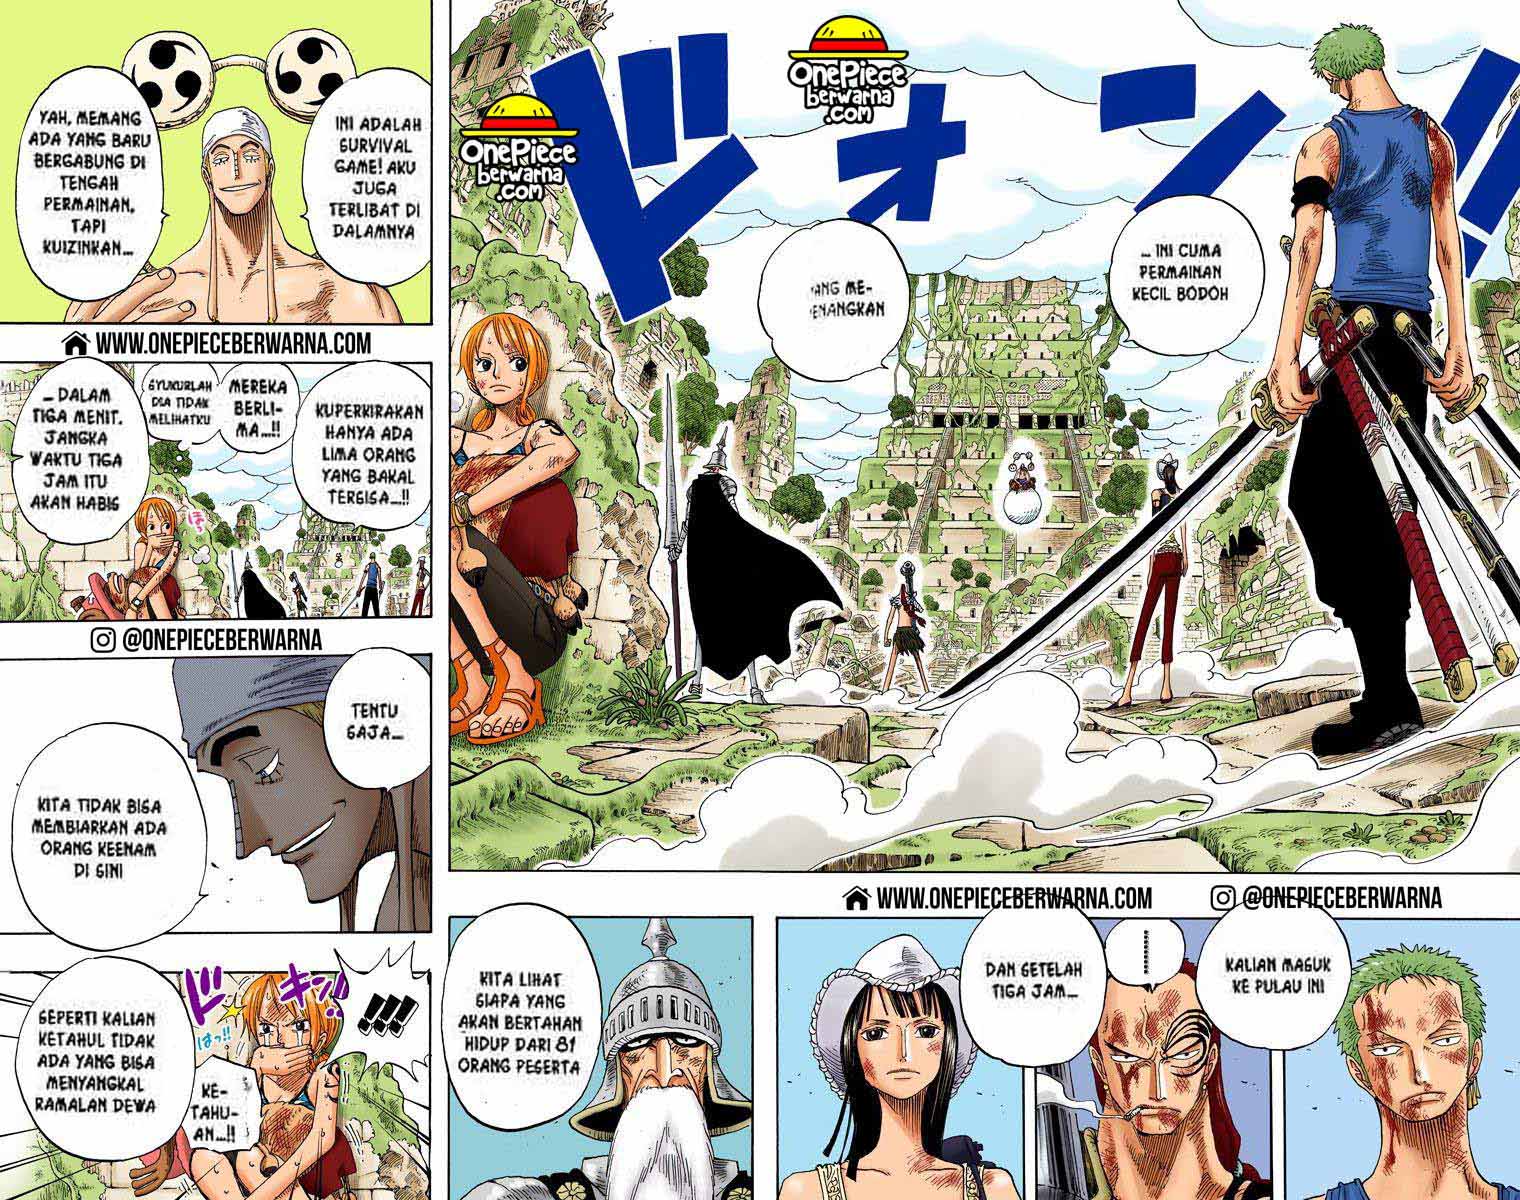 One Piece Berwarna Chapter 273